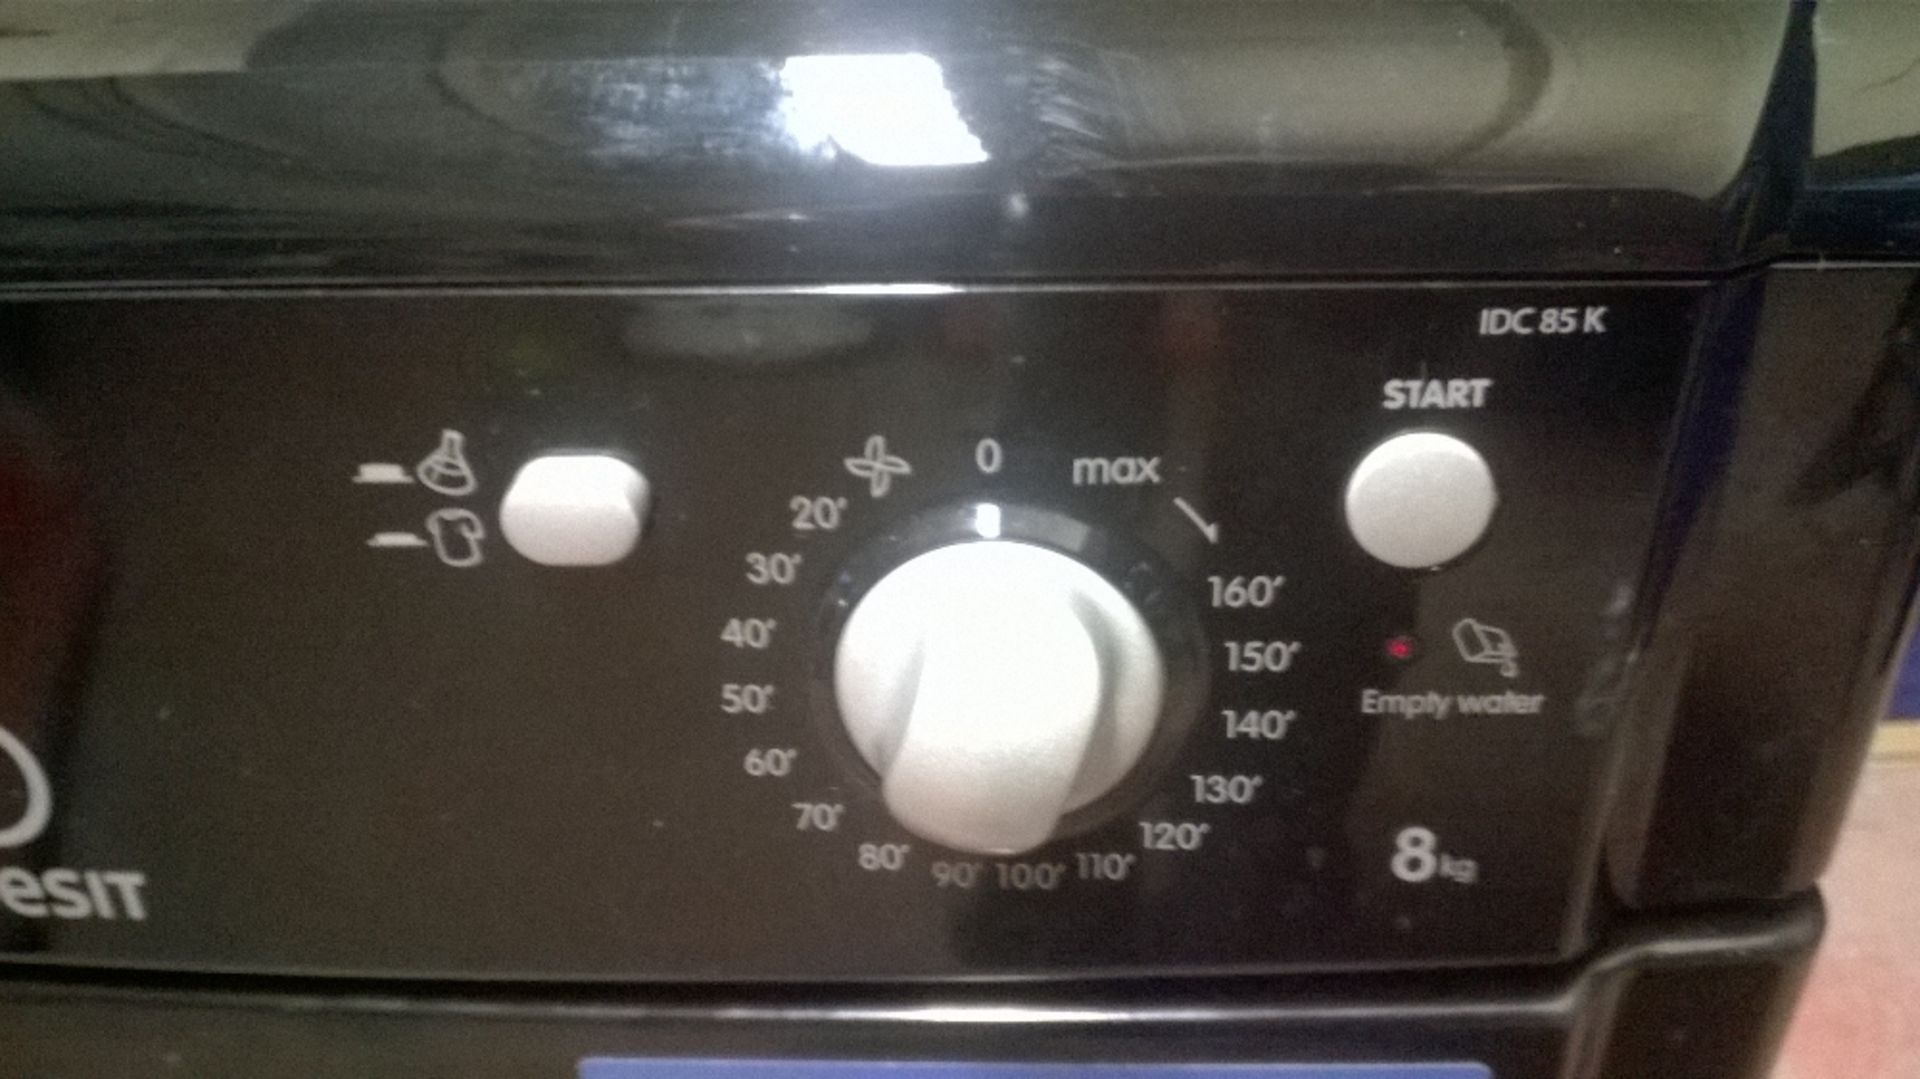 Indesit IDC85K Free-Standing Condensing Tumble Dryer - Image 4 of 8